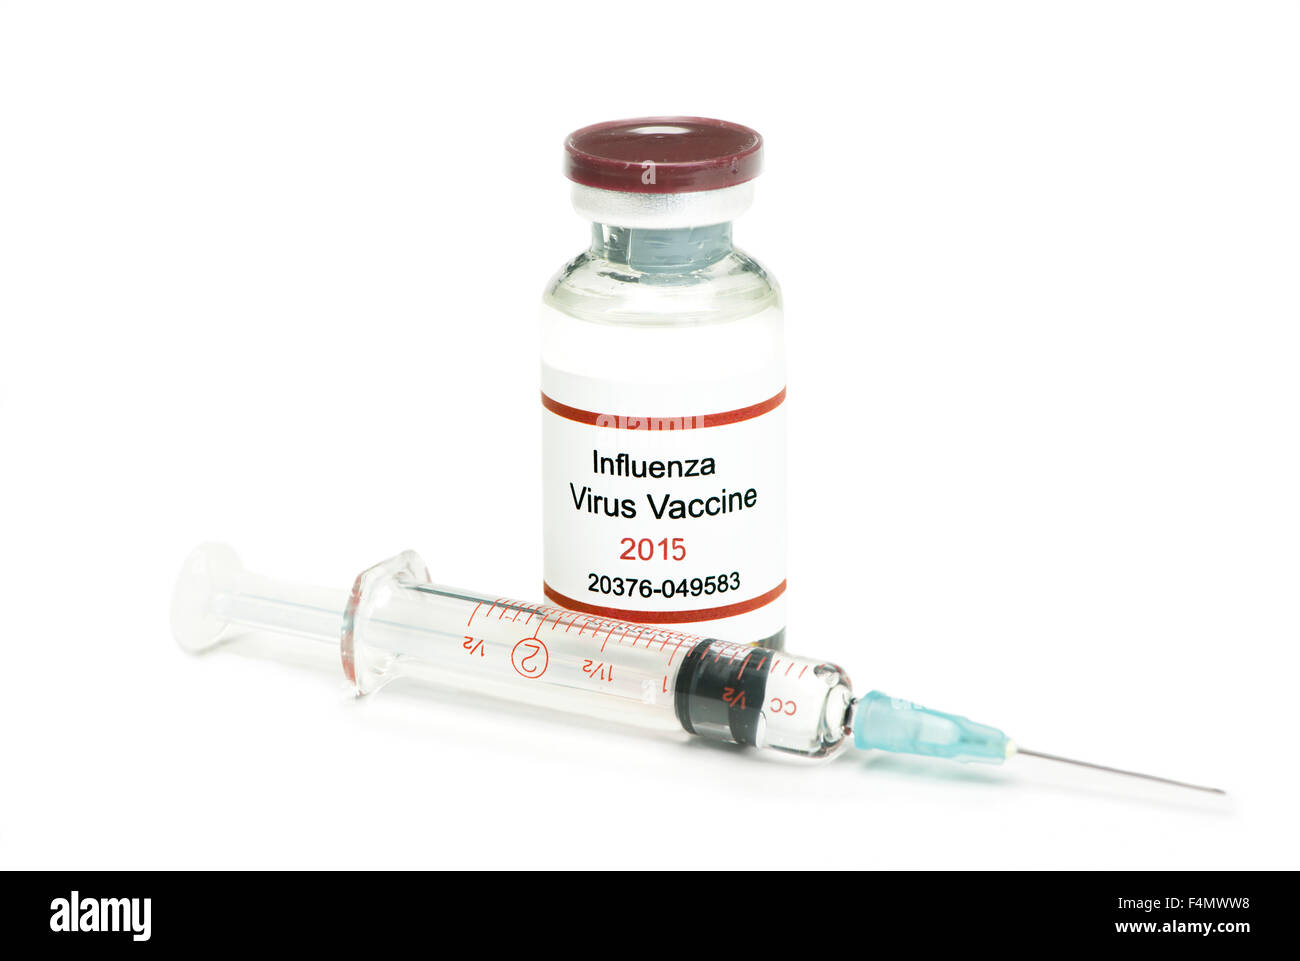 New 2015 influenza virus vaccine on white background. Stock Photo